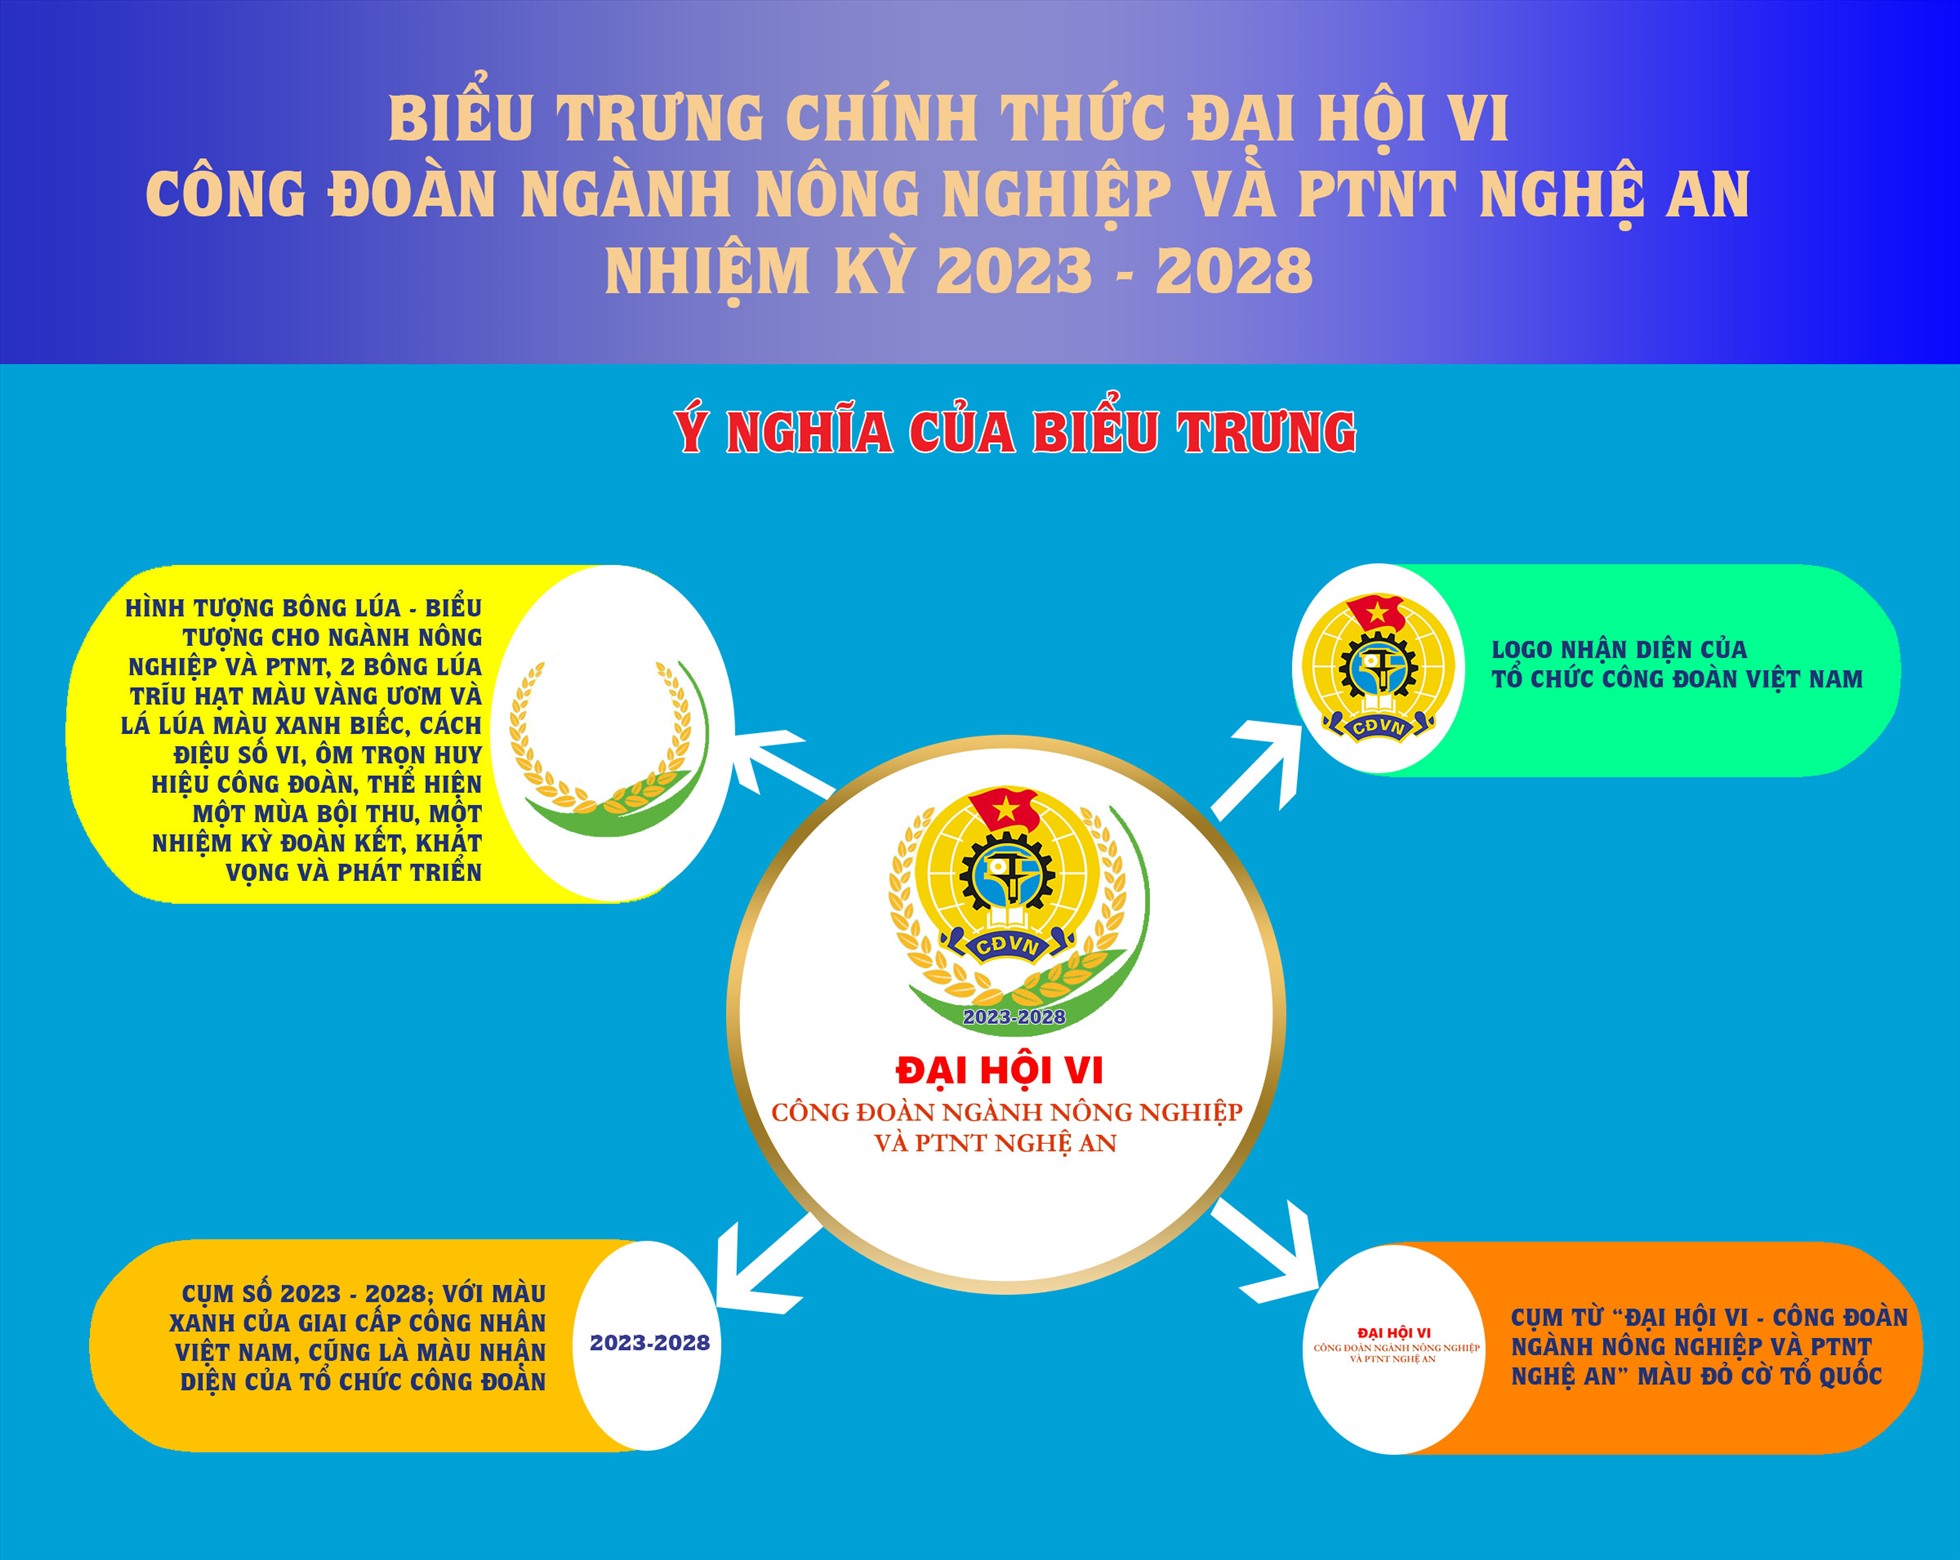 Biểu trưng chính thức Đại hội VI Công đoàn ngành Nông nghiệp và Phát triển nông thôn Nghệ An nhiệm kỳ 2023 – 2028. Ảnh: Hải Đăng